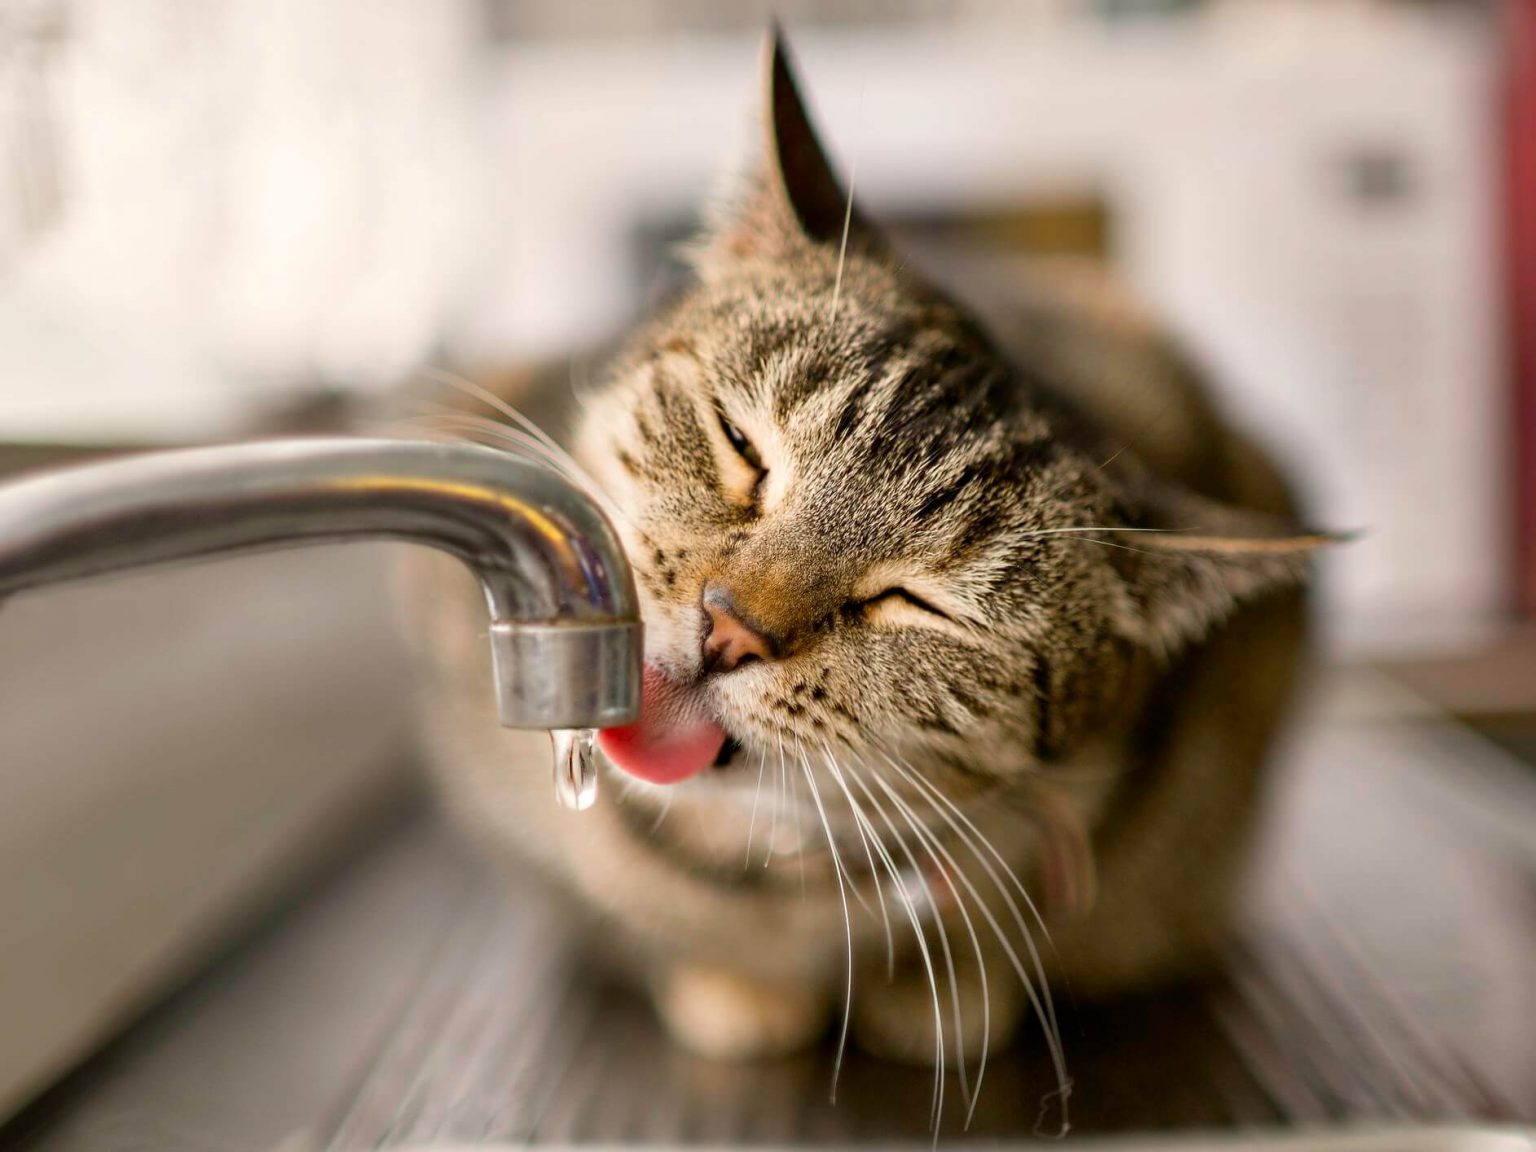 musluktan su içen kedi